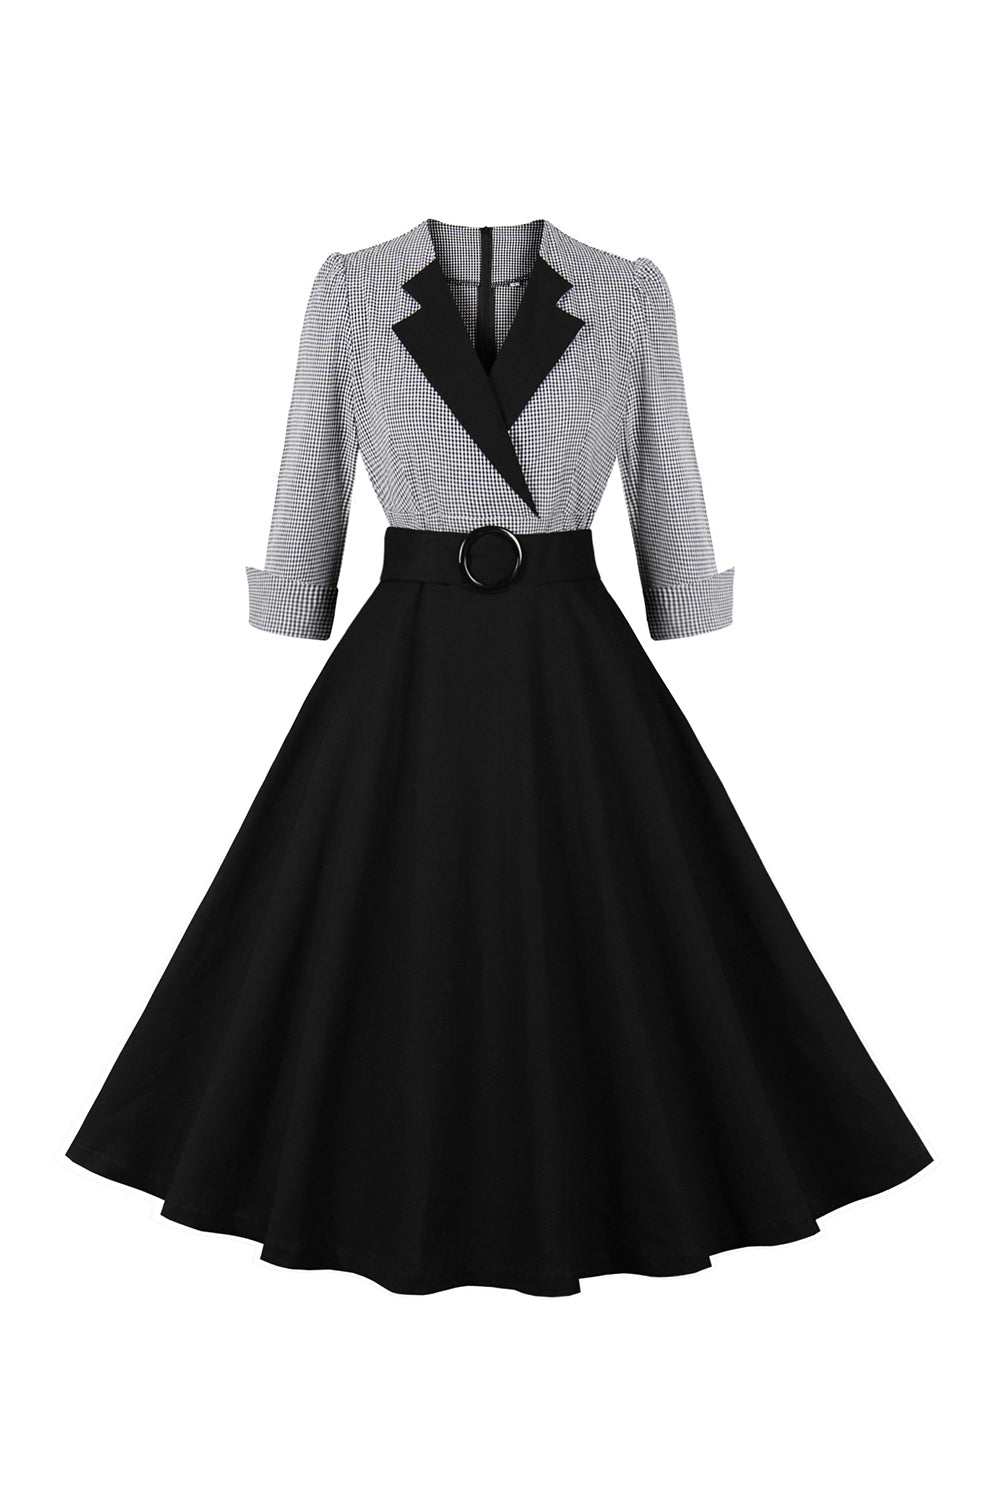 Langærmet Plaid Swing 1950'erne kjole med bælte